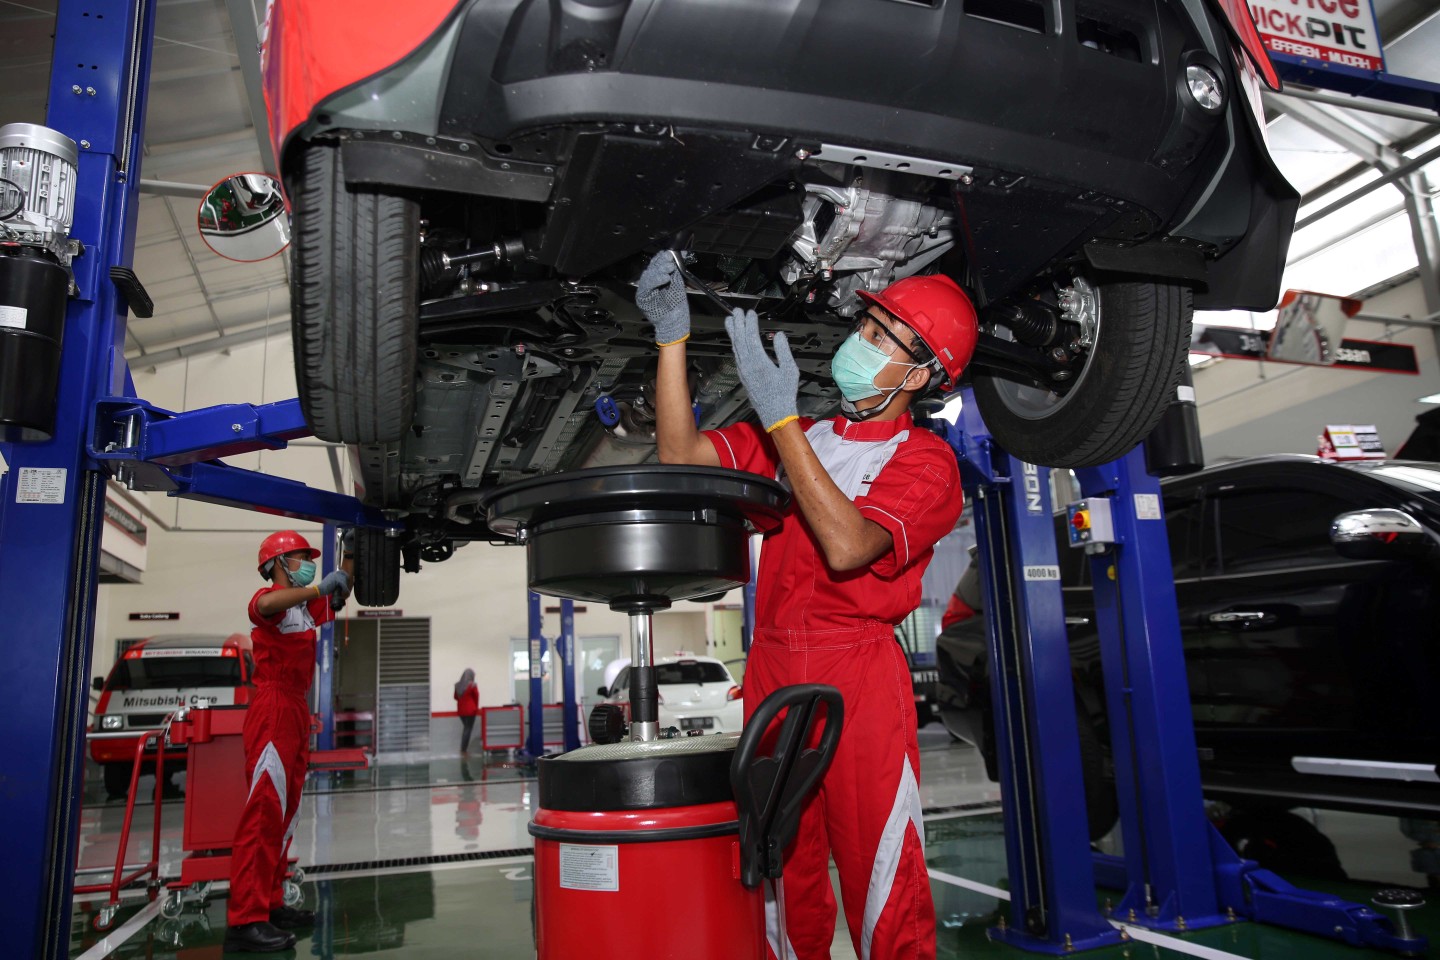 Mitsubishi Dirikan Tujuh Posko Siaga untuk Liburan Akhir Tahun